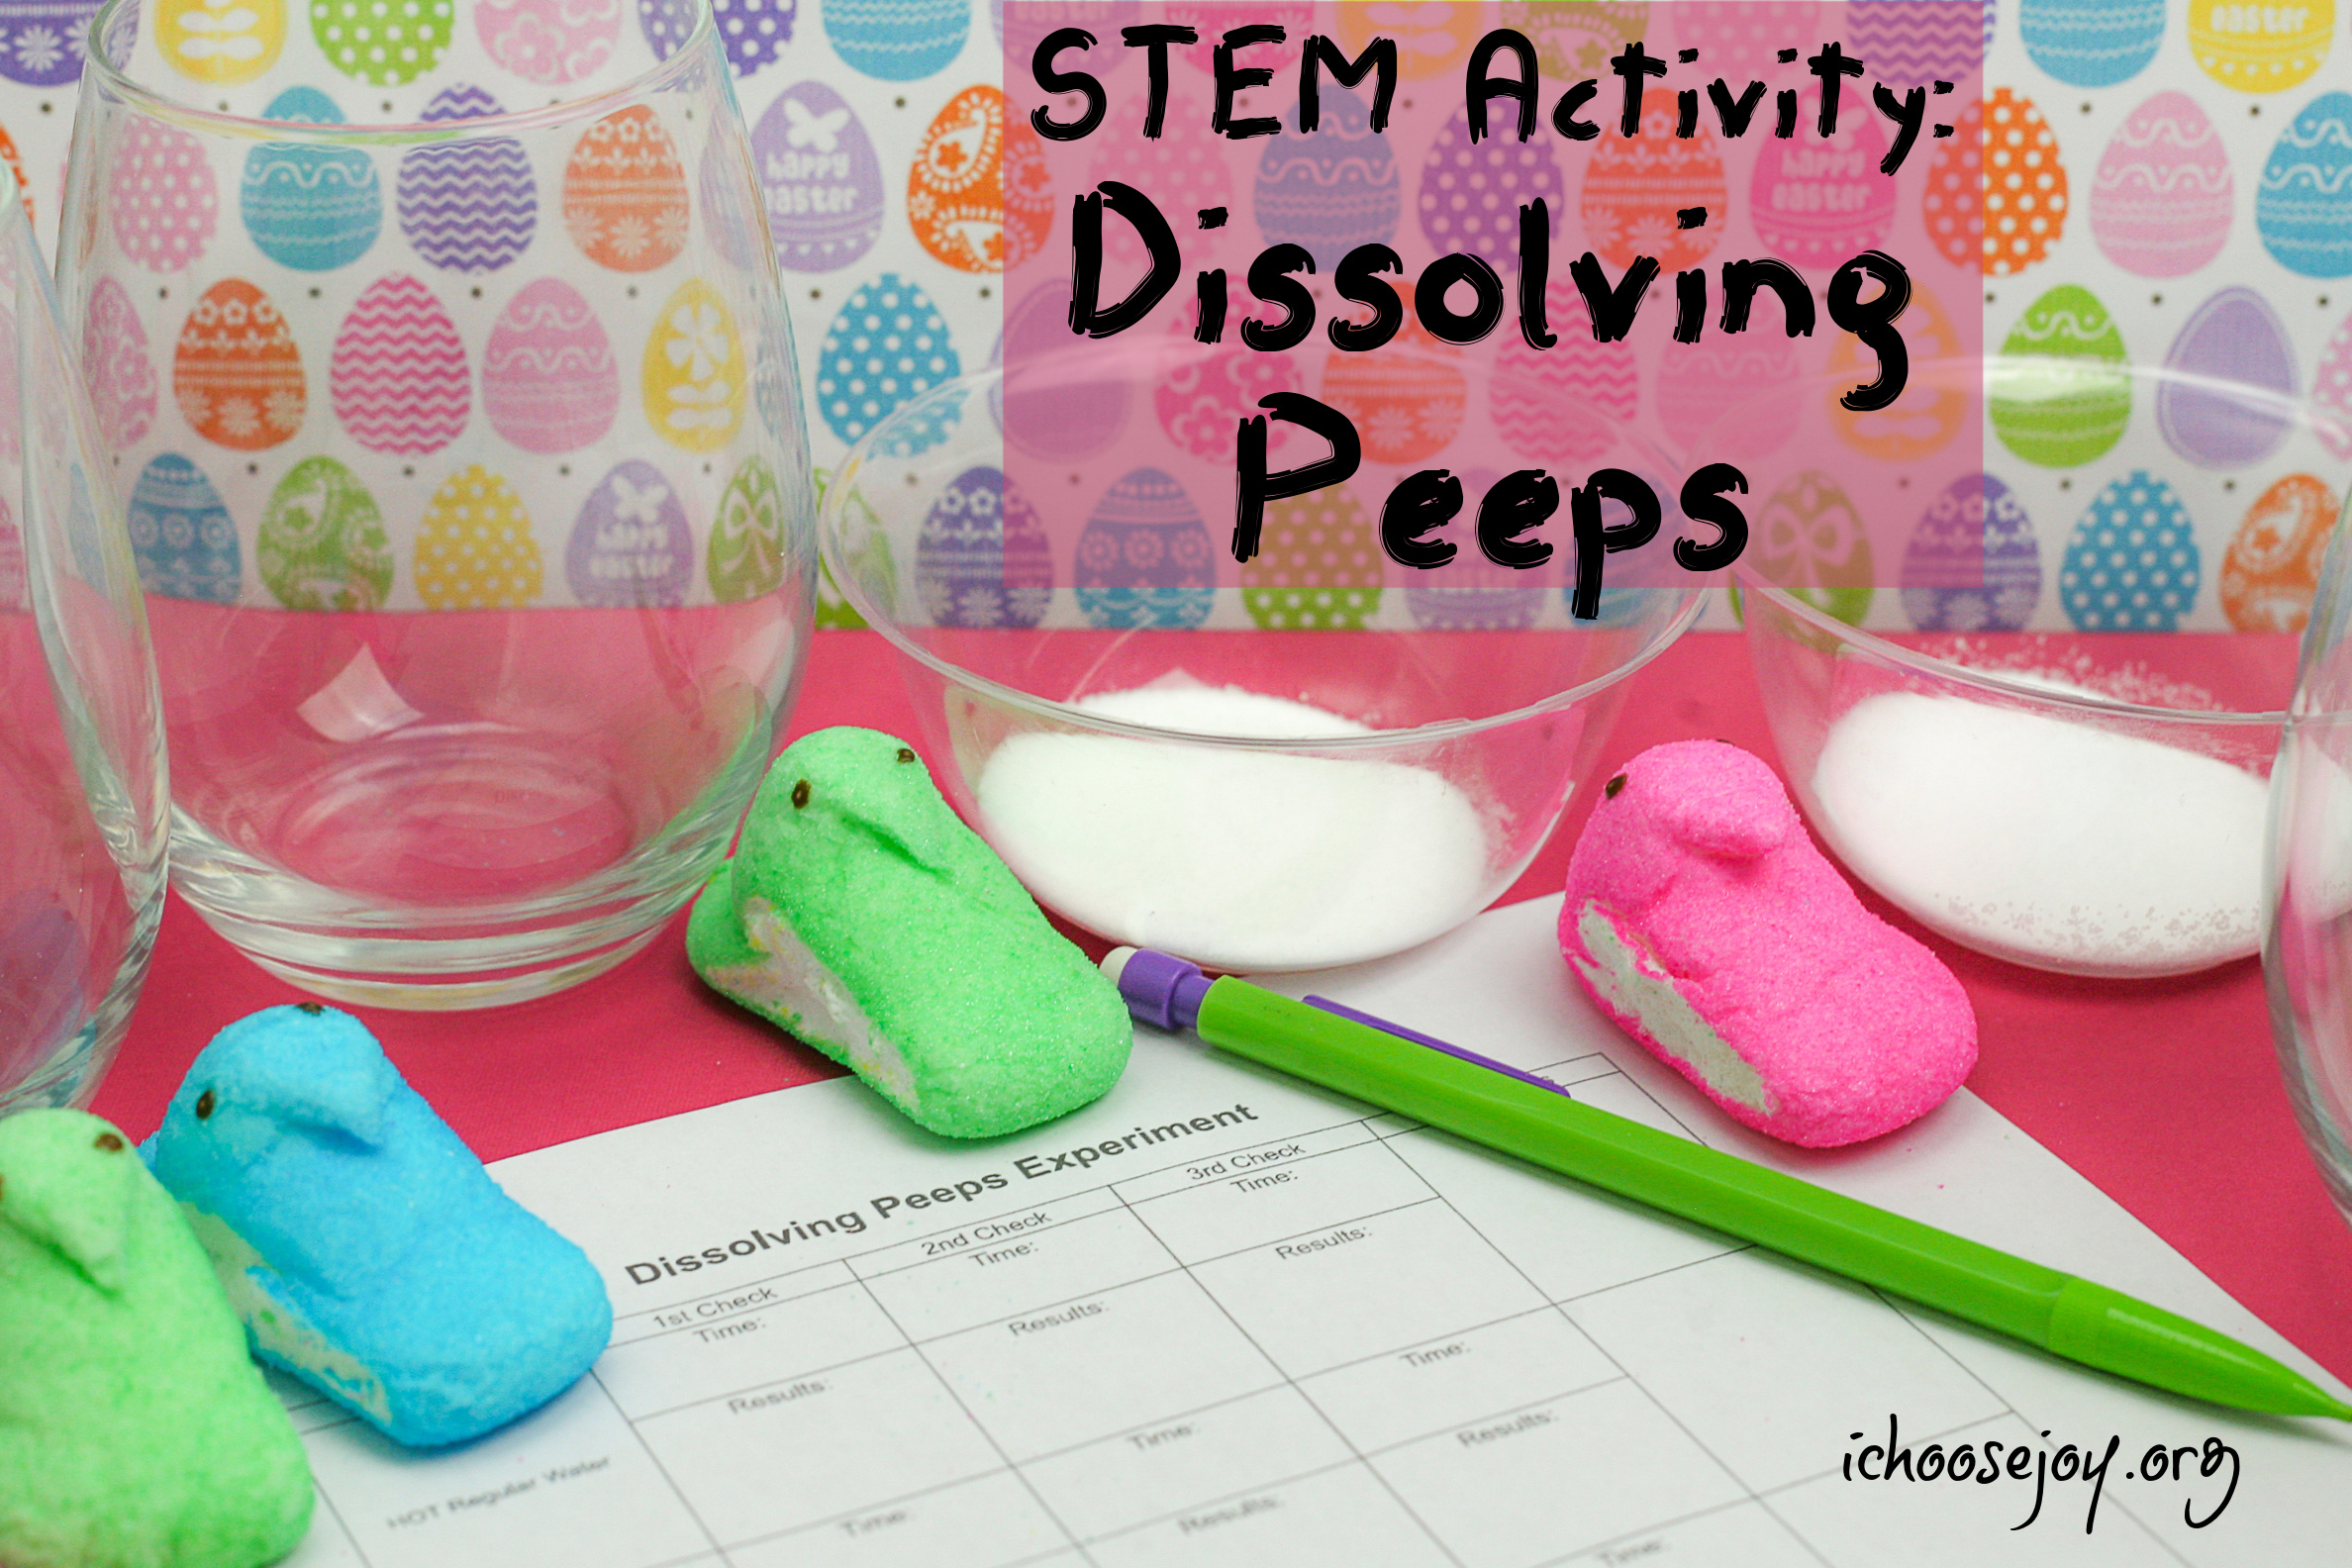 Dissolving Peeps Experiment: STEM Activity for Eastertime